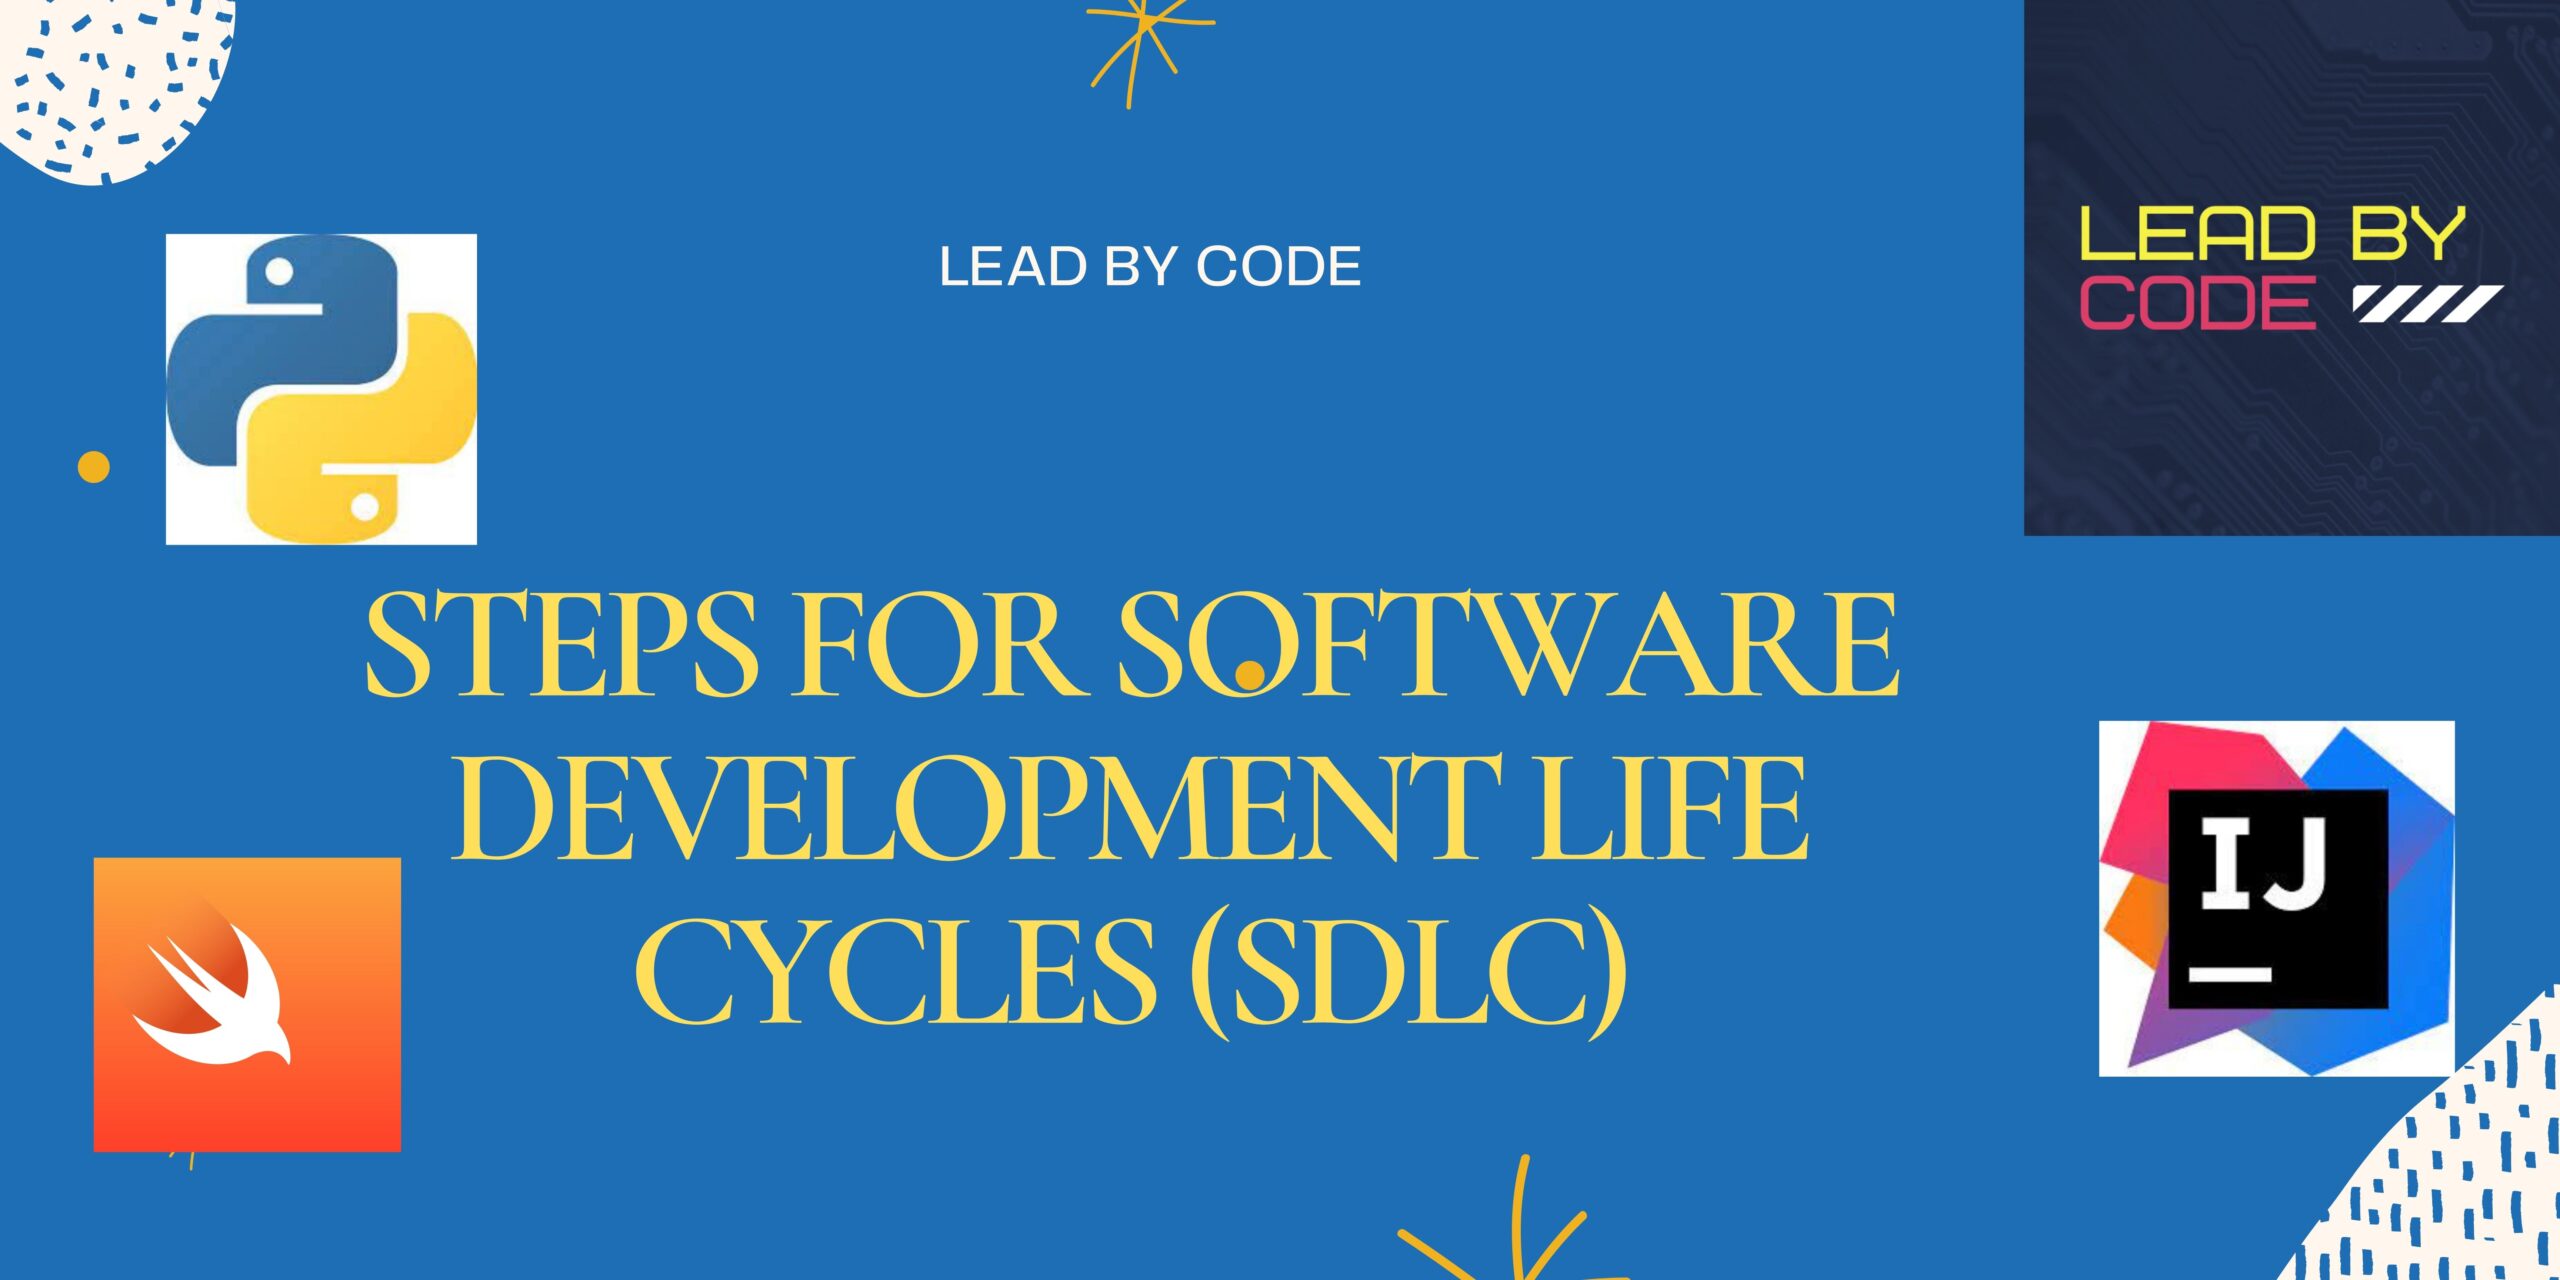 Steps for software development life cycles (SDLC)